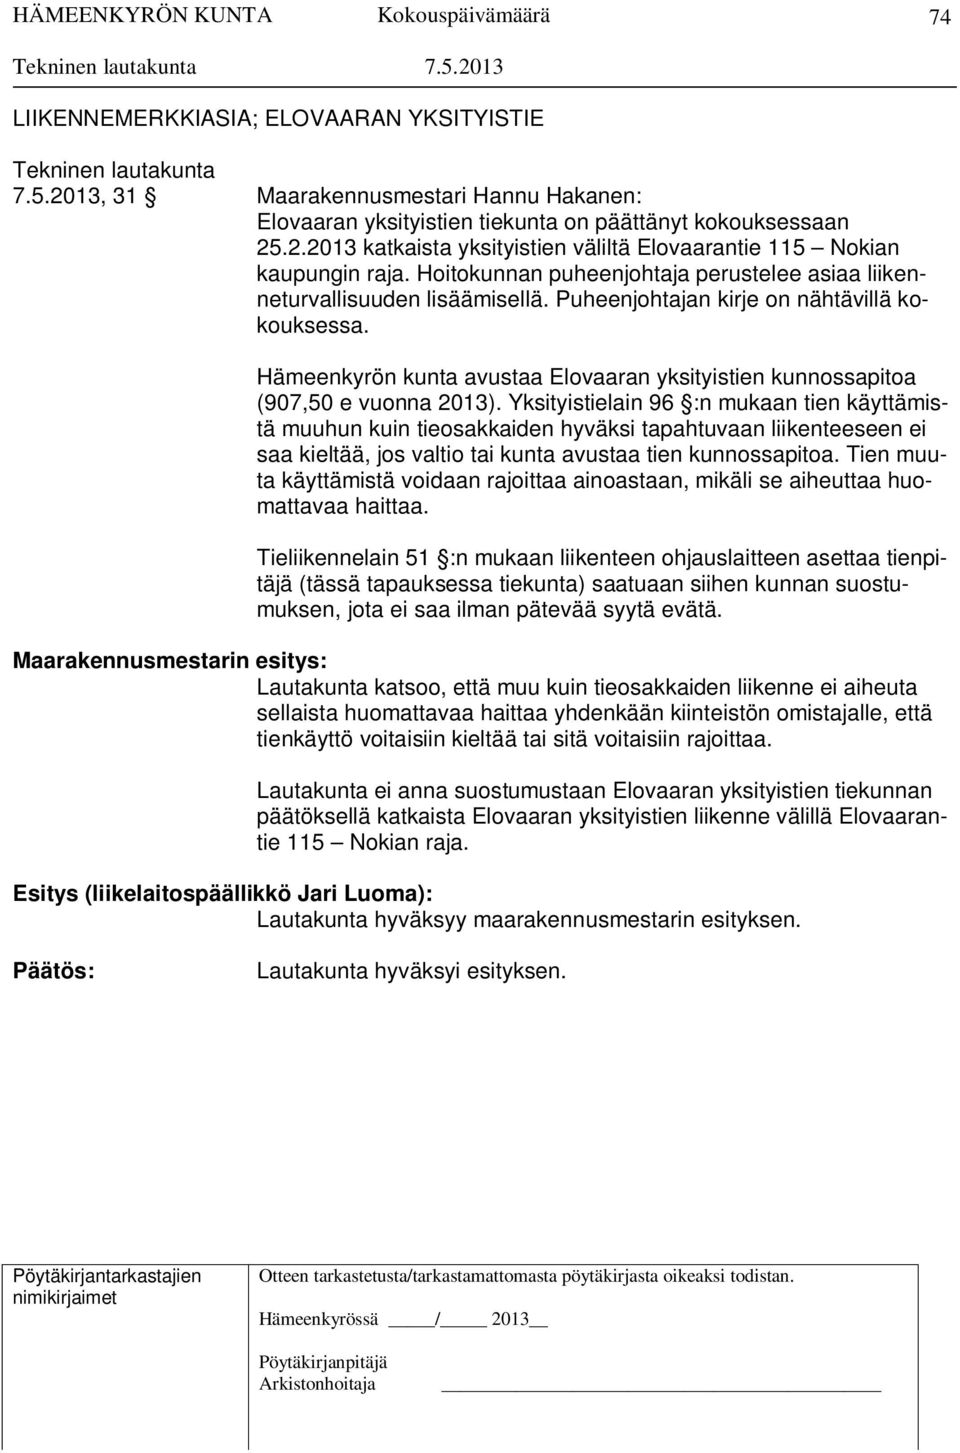 Hämeenkyrön kunta avustaa Elovaaran yksityistien kunnossapitoa (907,50 e vuonna 2013).